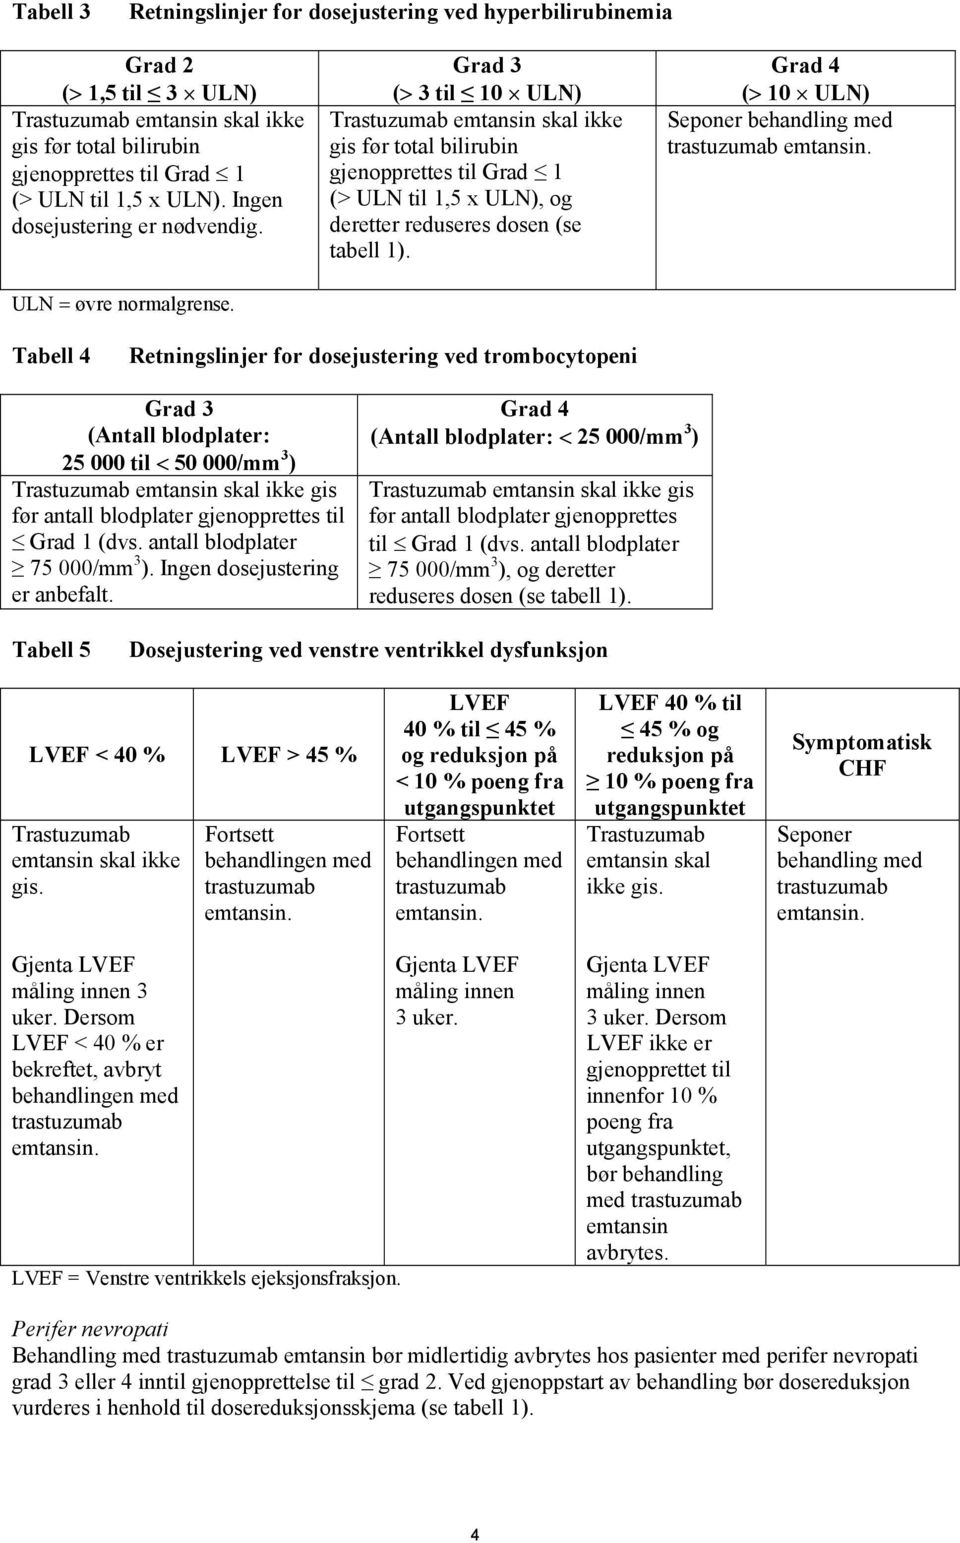 Grad 3 (> 3 til 10 ULN) Trastuzumab emtansin skal ikke gis før total bilirubin gjenopprettes til Grad 1 (> ULN til 1,5 x ULN), og deretter reduseres dosen (se tabell 1).